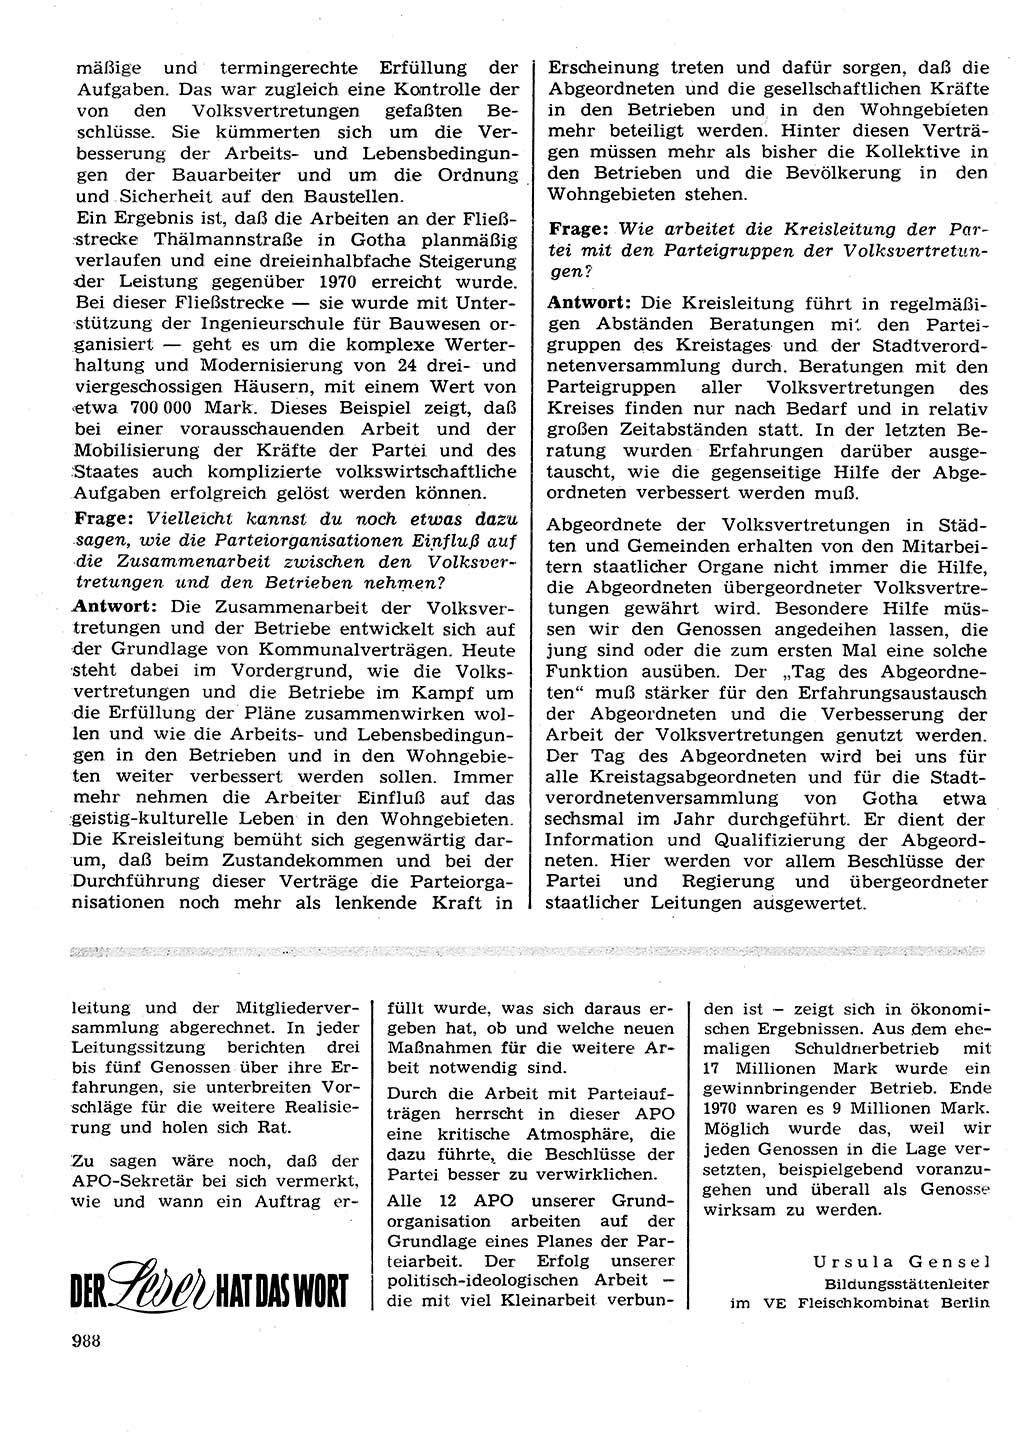 Neuer Weg (NW), Organ des Zentralkomitees (ZK) der SED (Sozialistische Einheitspartei Deutschlands) für Fragen des Parteilebens, 26. Jahrgang [Deutsche Demokratische Republik (DDR)] 1971, Seite 988 (NW ZK SED DDR 1971, S. 988)